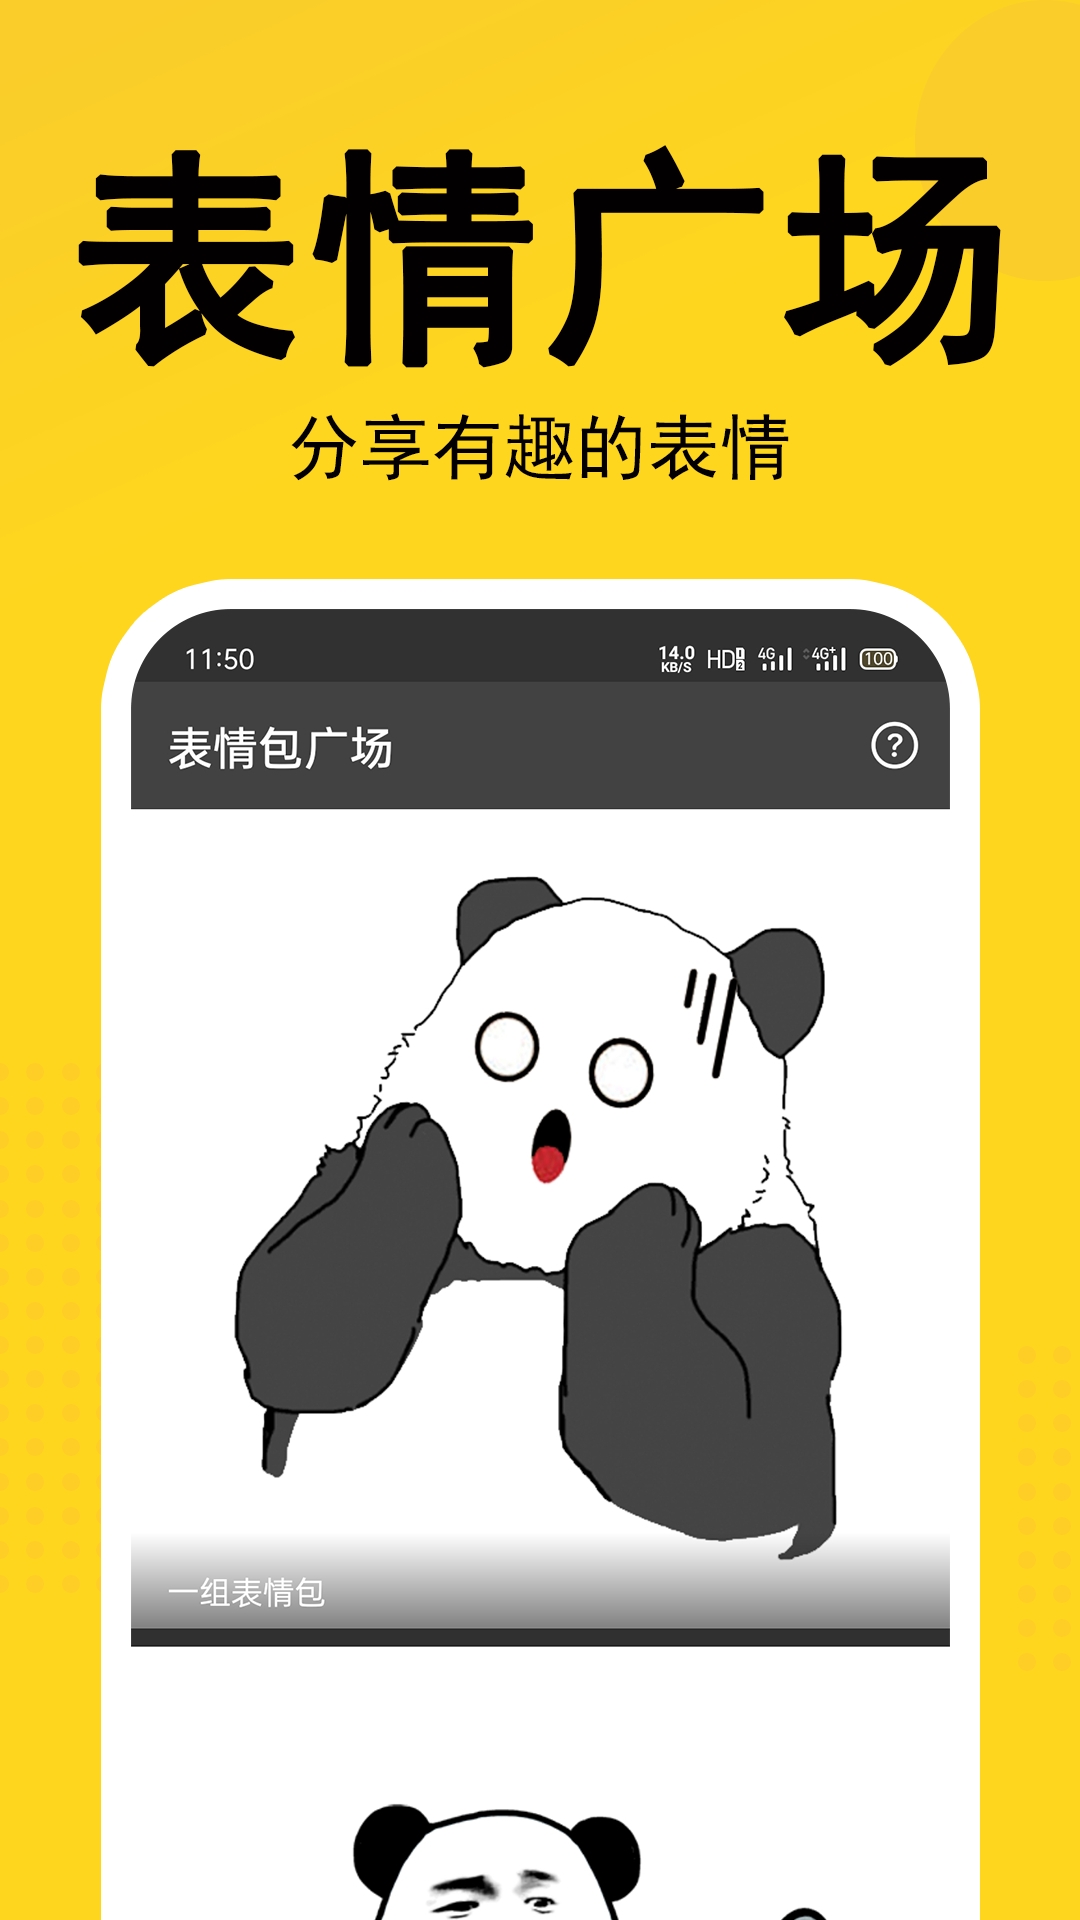 熊猫头表情包生成器免费版下载